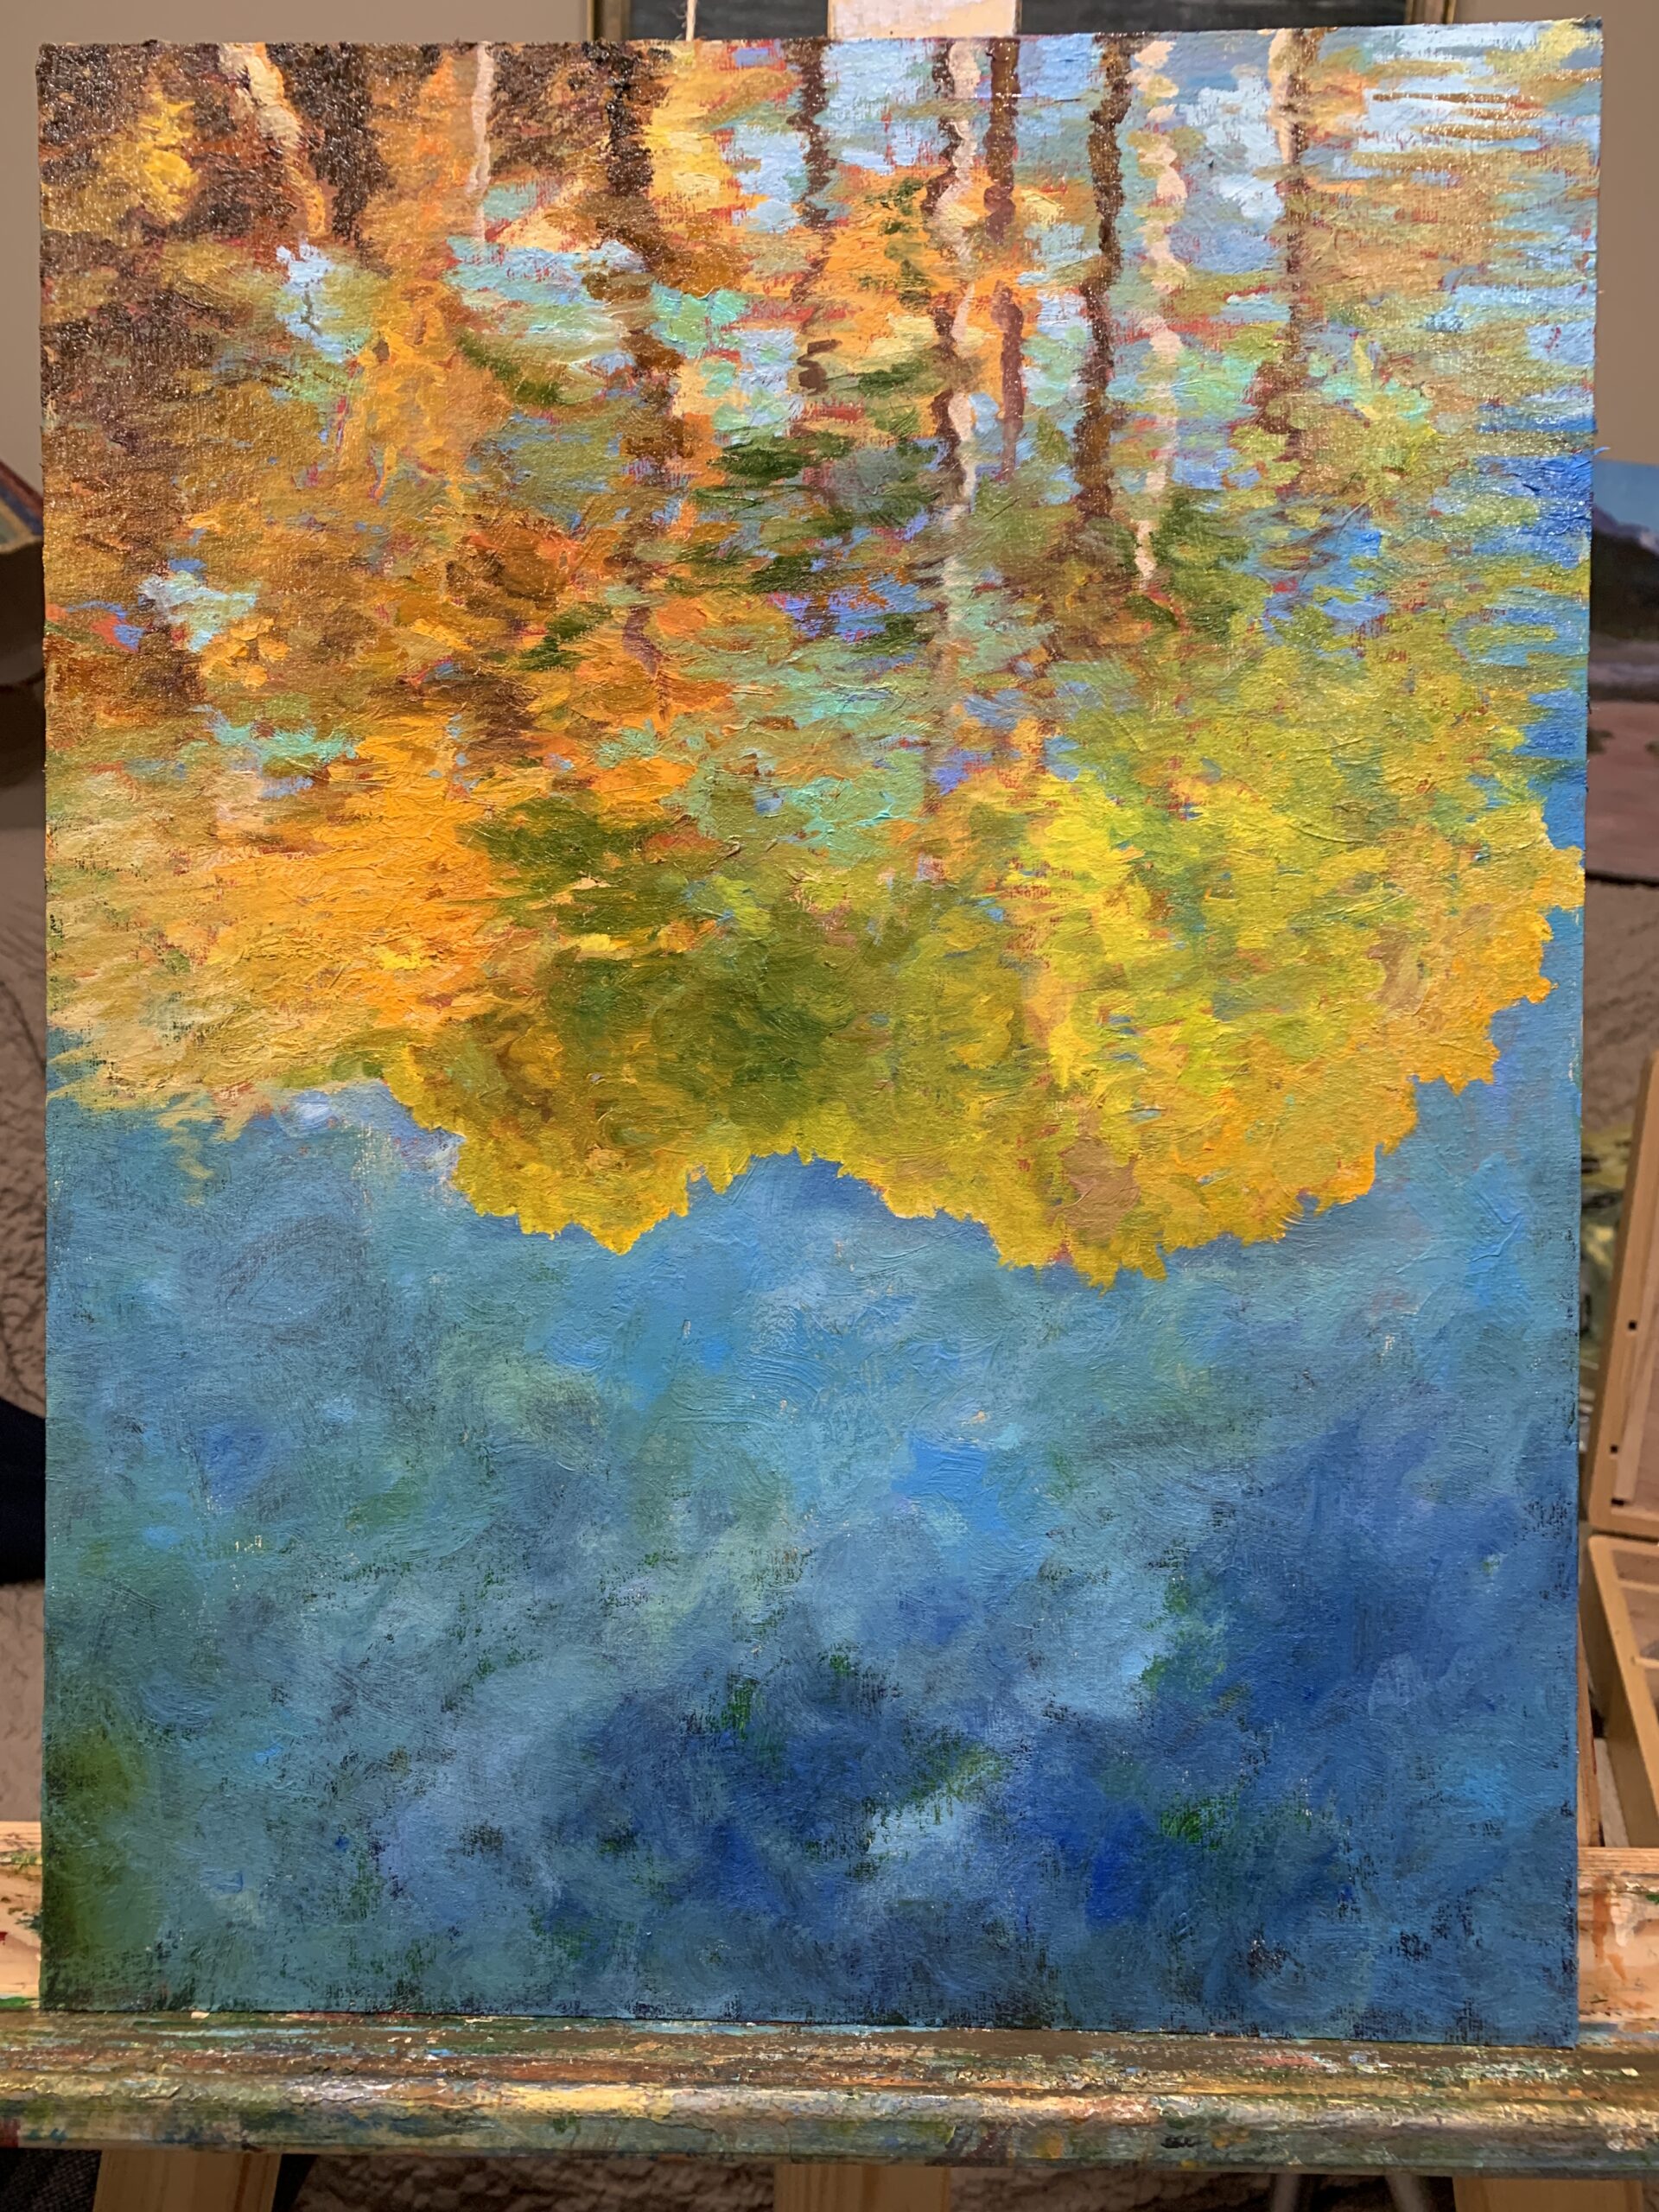 осень пруд отражение в воде деревья импрессионизм пейзаж художник Альберт Сафиуллин